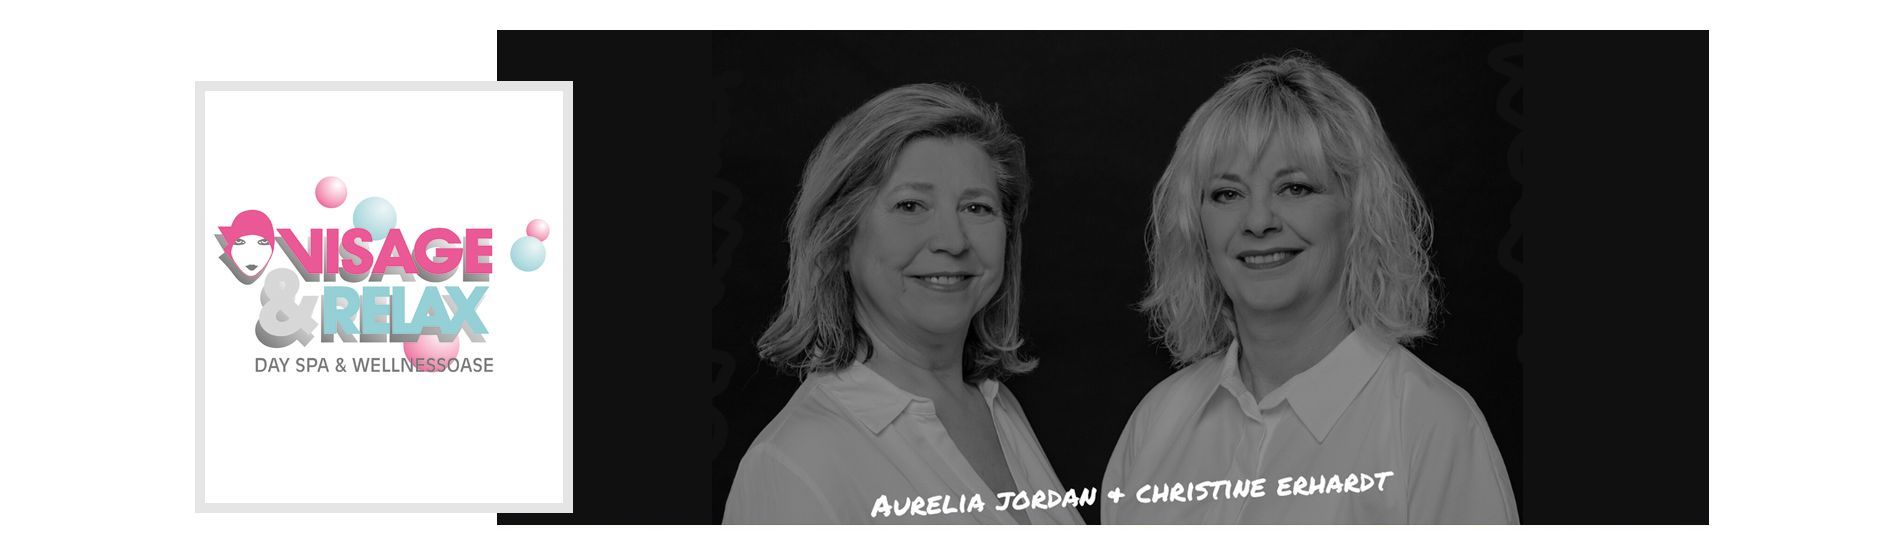 Aurelia Jordan und Christine Erhardt, Kosmetikstudio Visage & Relax Herzogenaurach